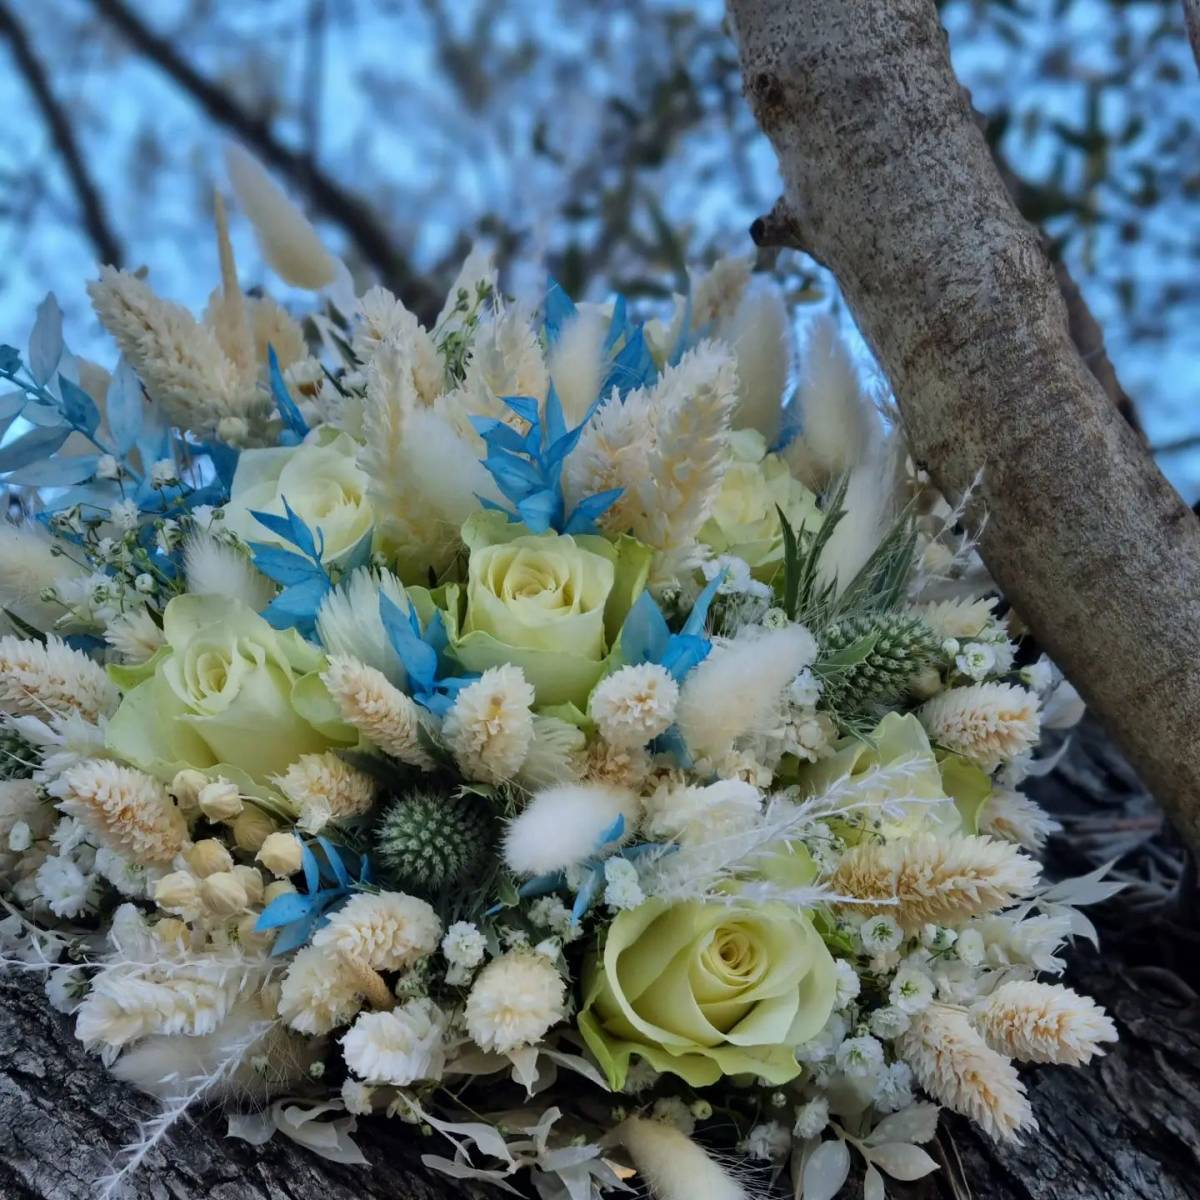 Créations de bouquets florales personnalisés pour particuliers et professionnels par un artisan fleuriste à Venelles à côté d’Aix en Provence